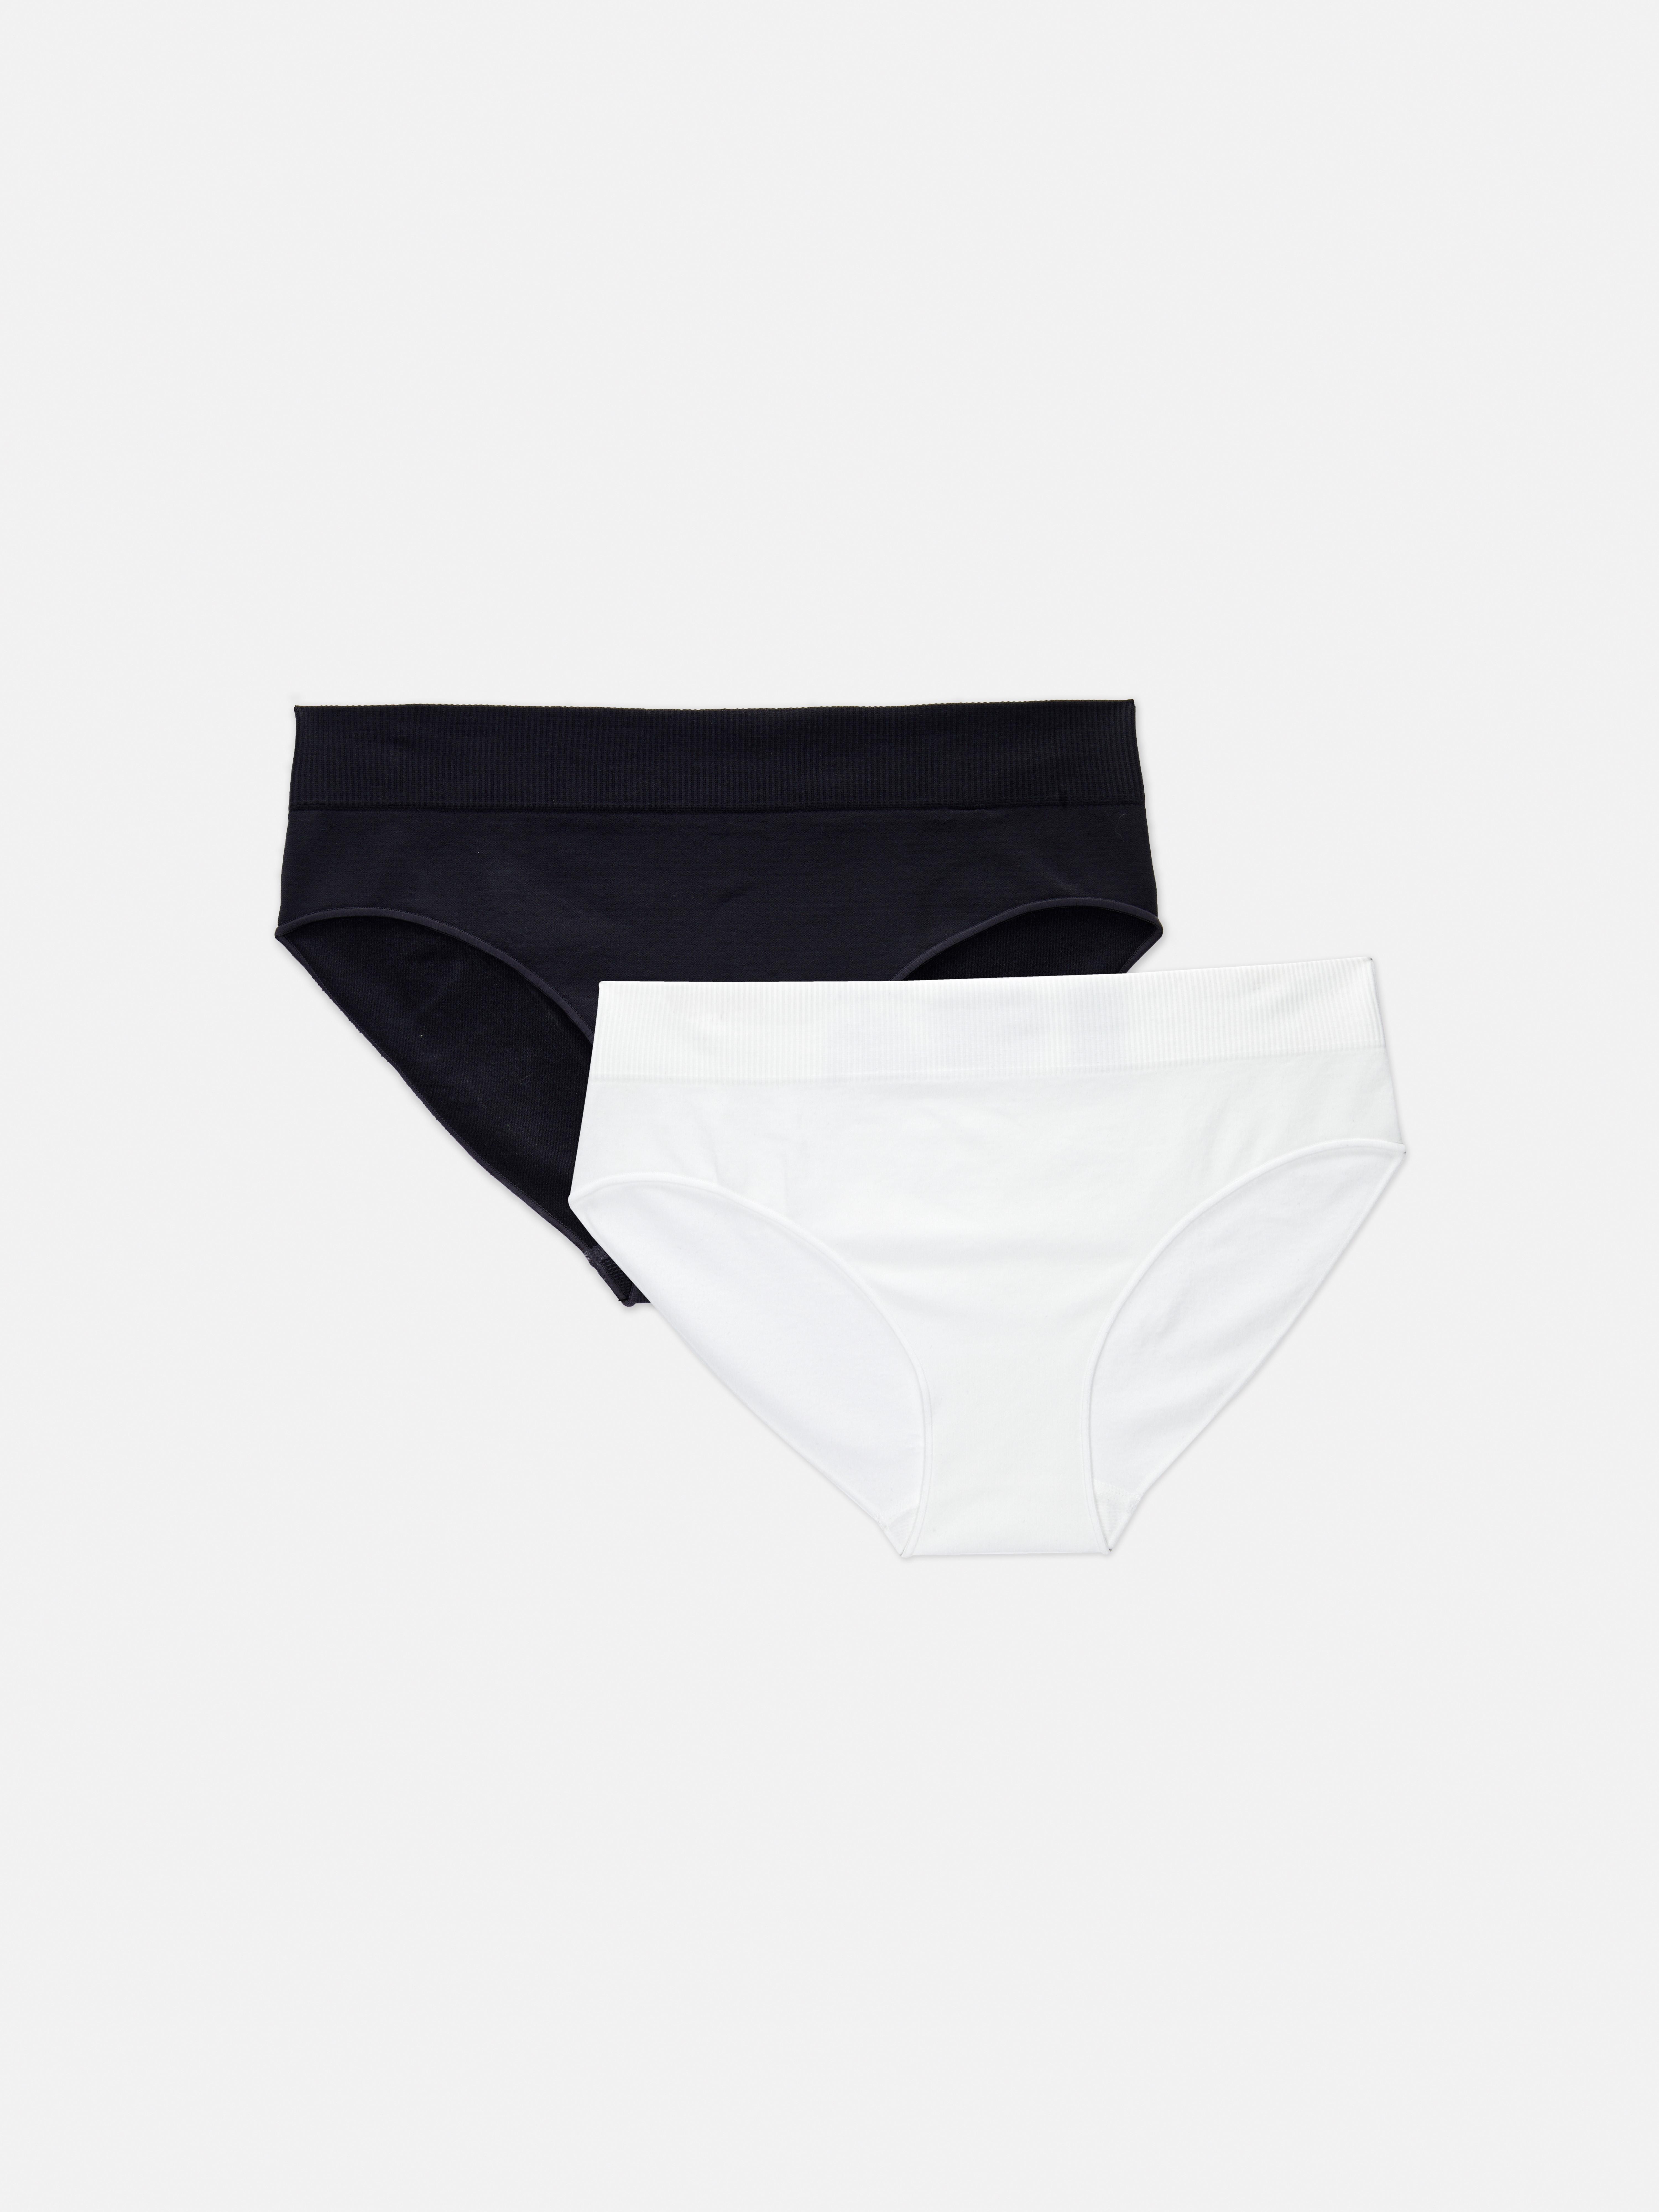 Primark Seam Free Mini Briefs Knickers Ladies Women Underwear 3